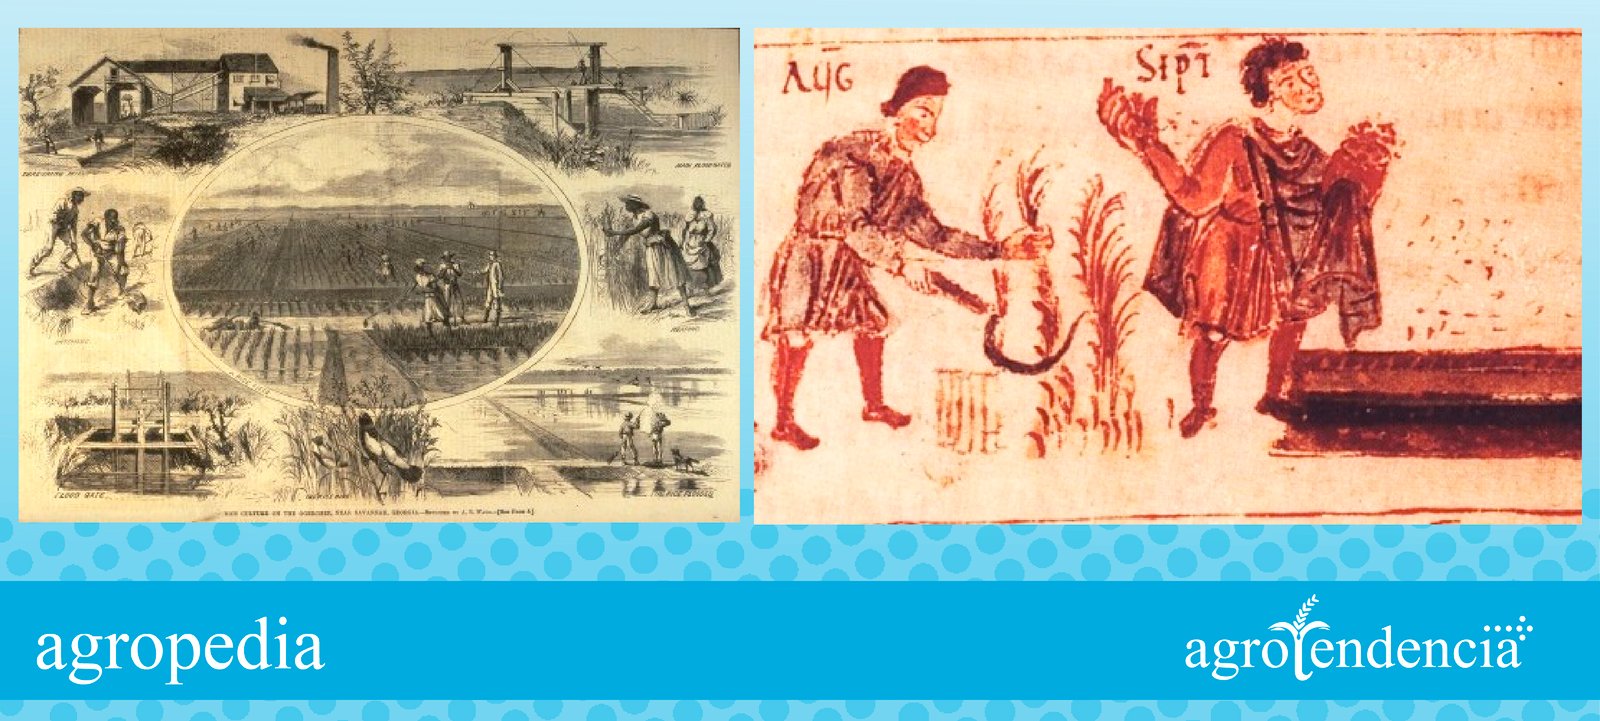 Cultivo de arroz - Siembra de arroz, por esclavos negros y españoles